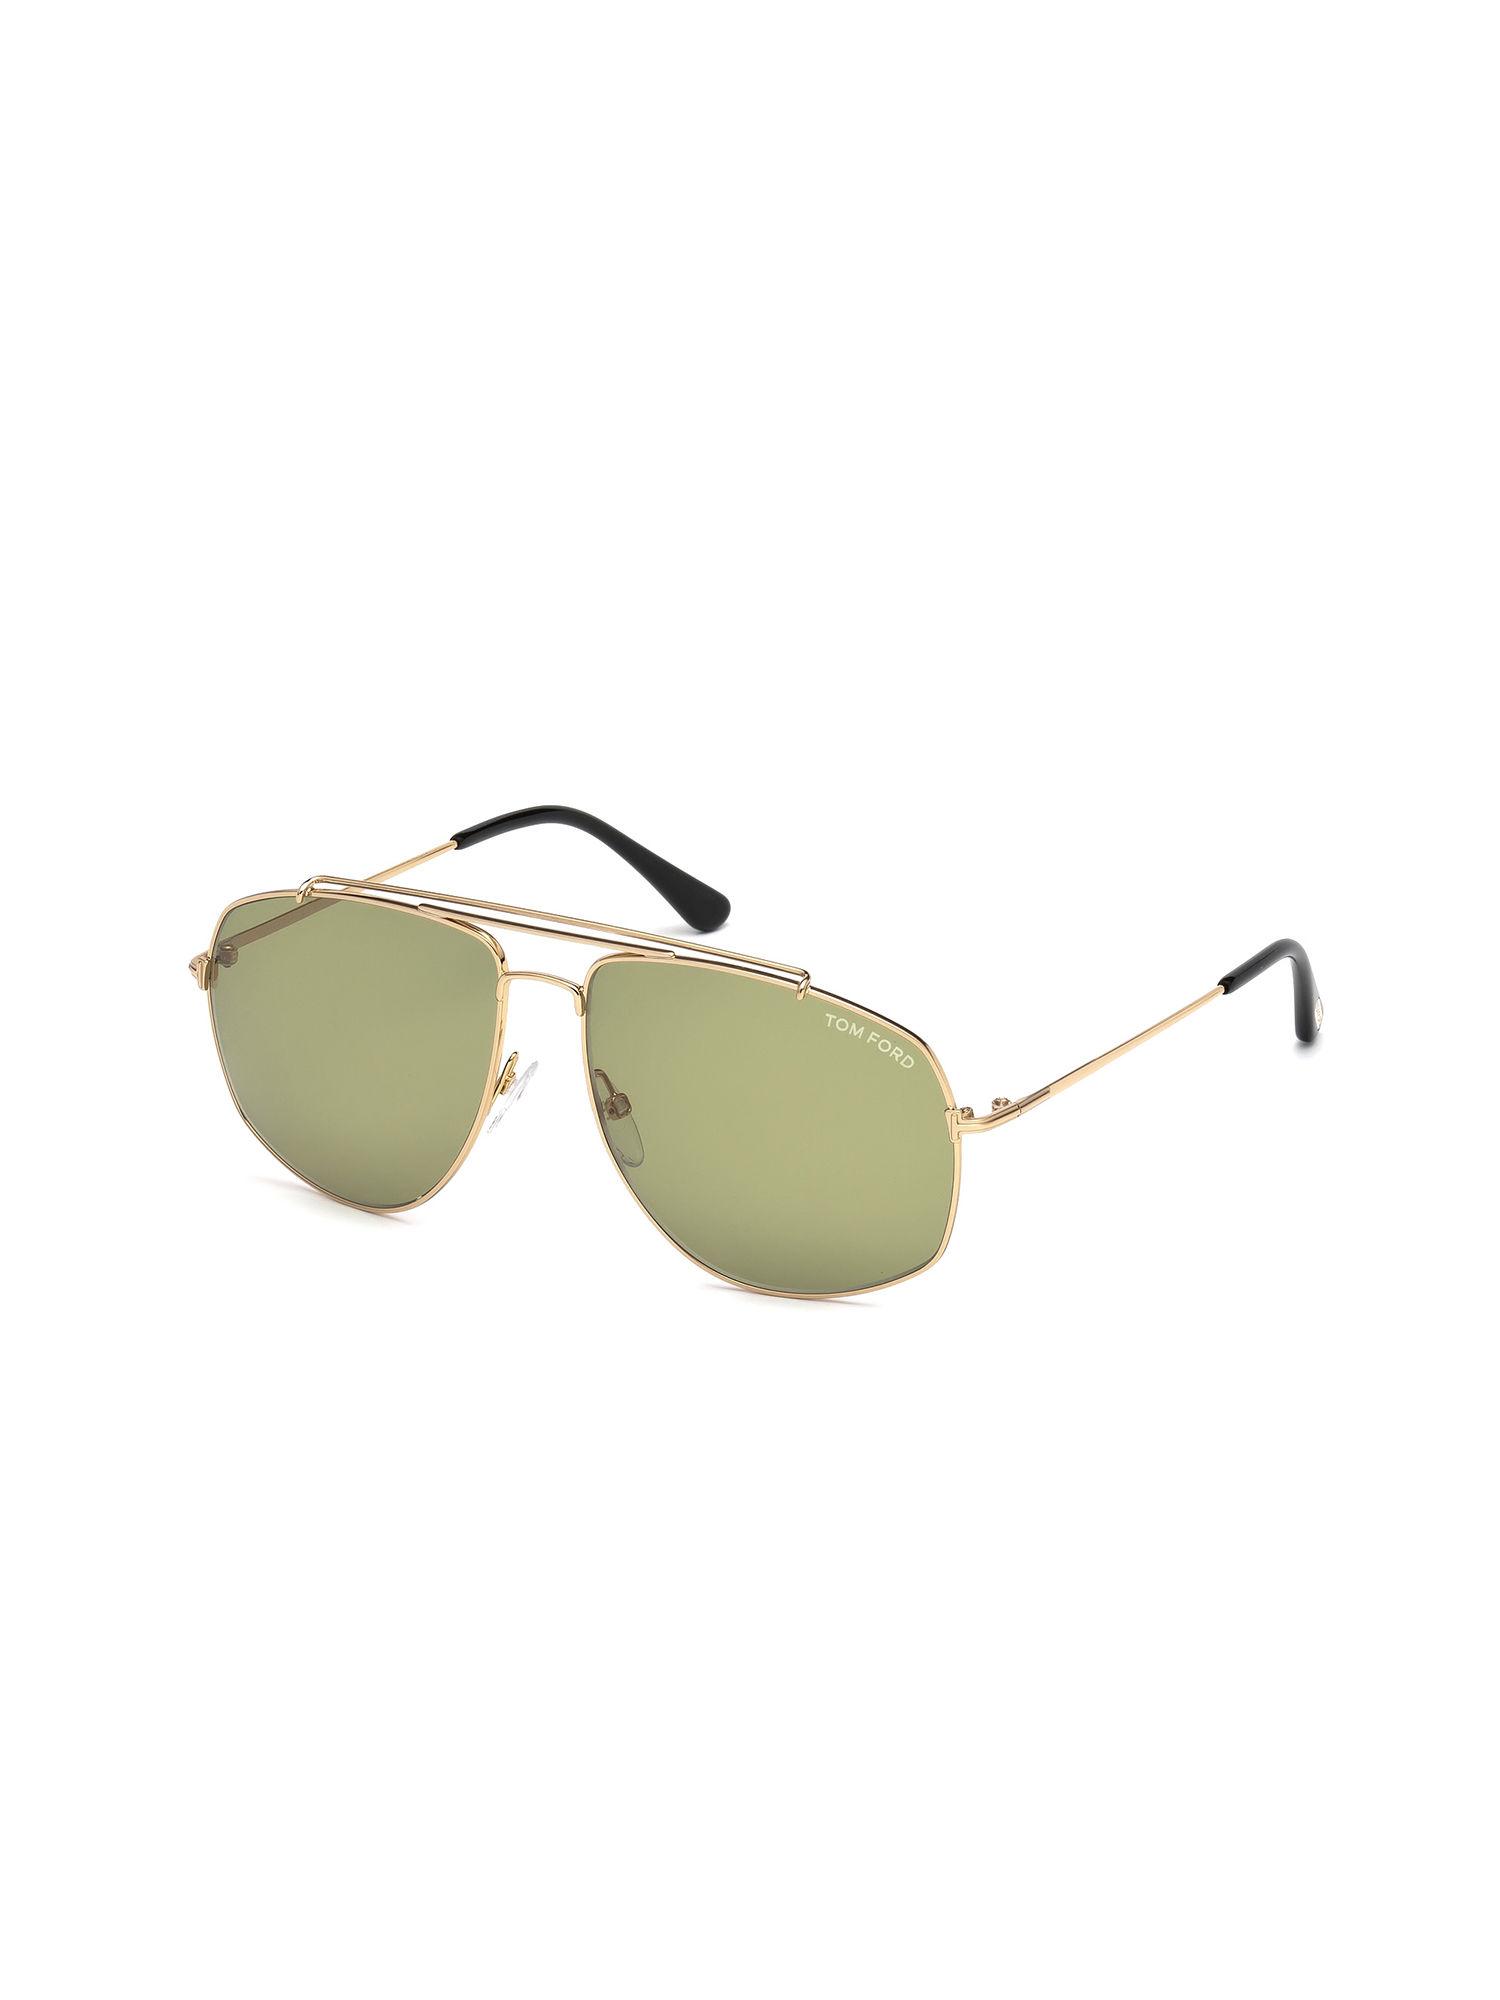 Gold Oversized Sunglasses - FT0496 59 28N